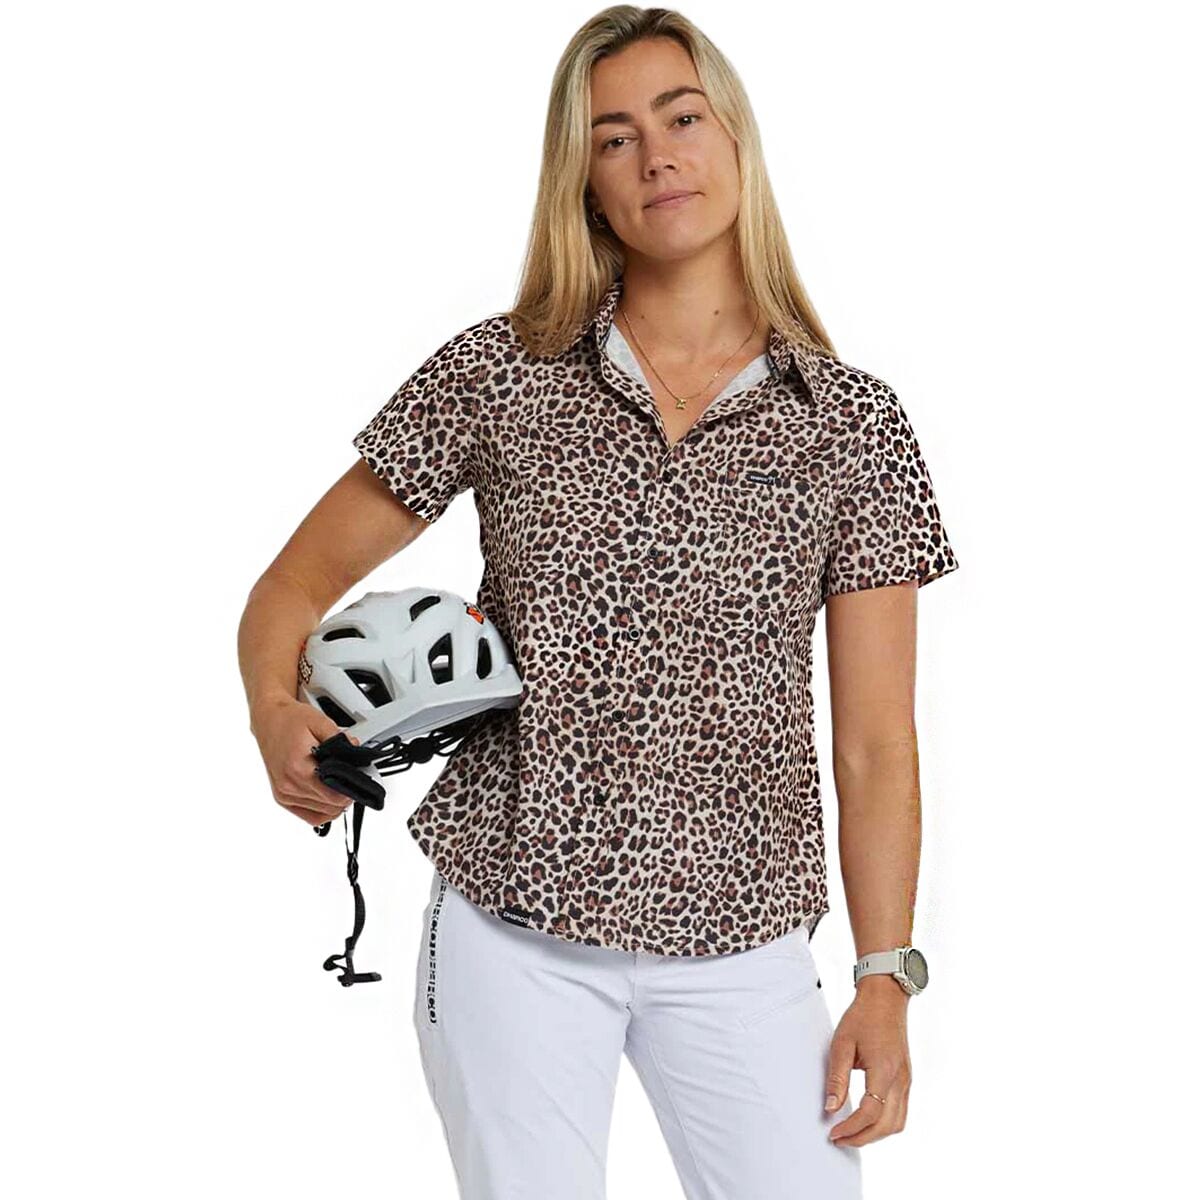 DHaRCO Tech Party Shirt - Women's Leopard, L